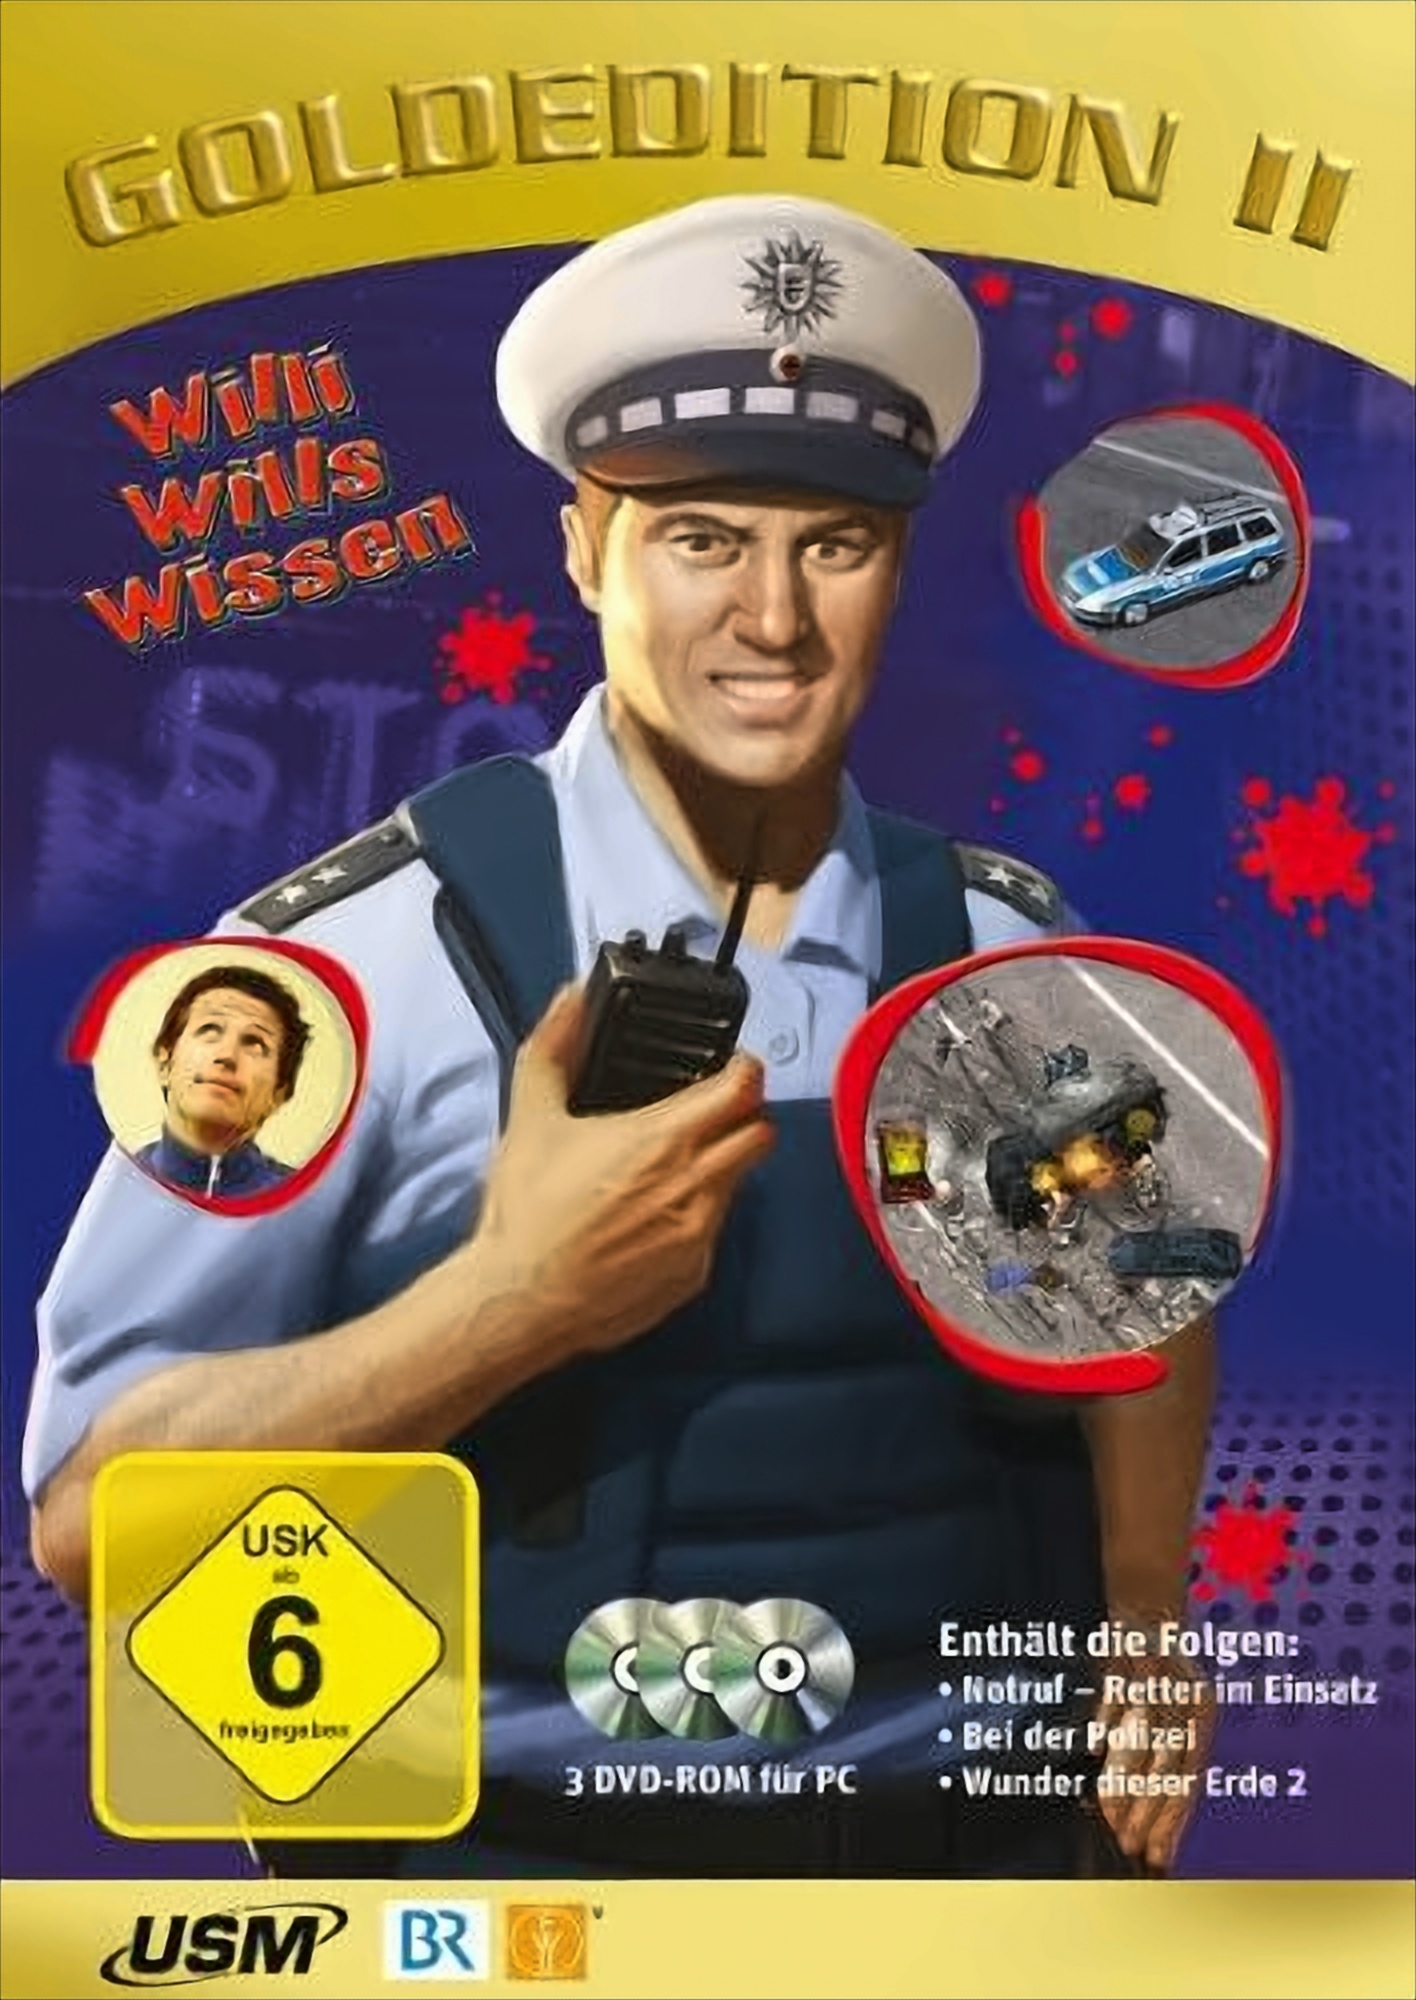 - wissen 2 Willi wills [PC] DVD-ROMs) - (3 Goldedition